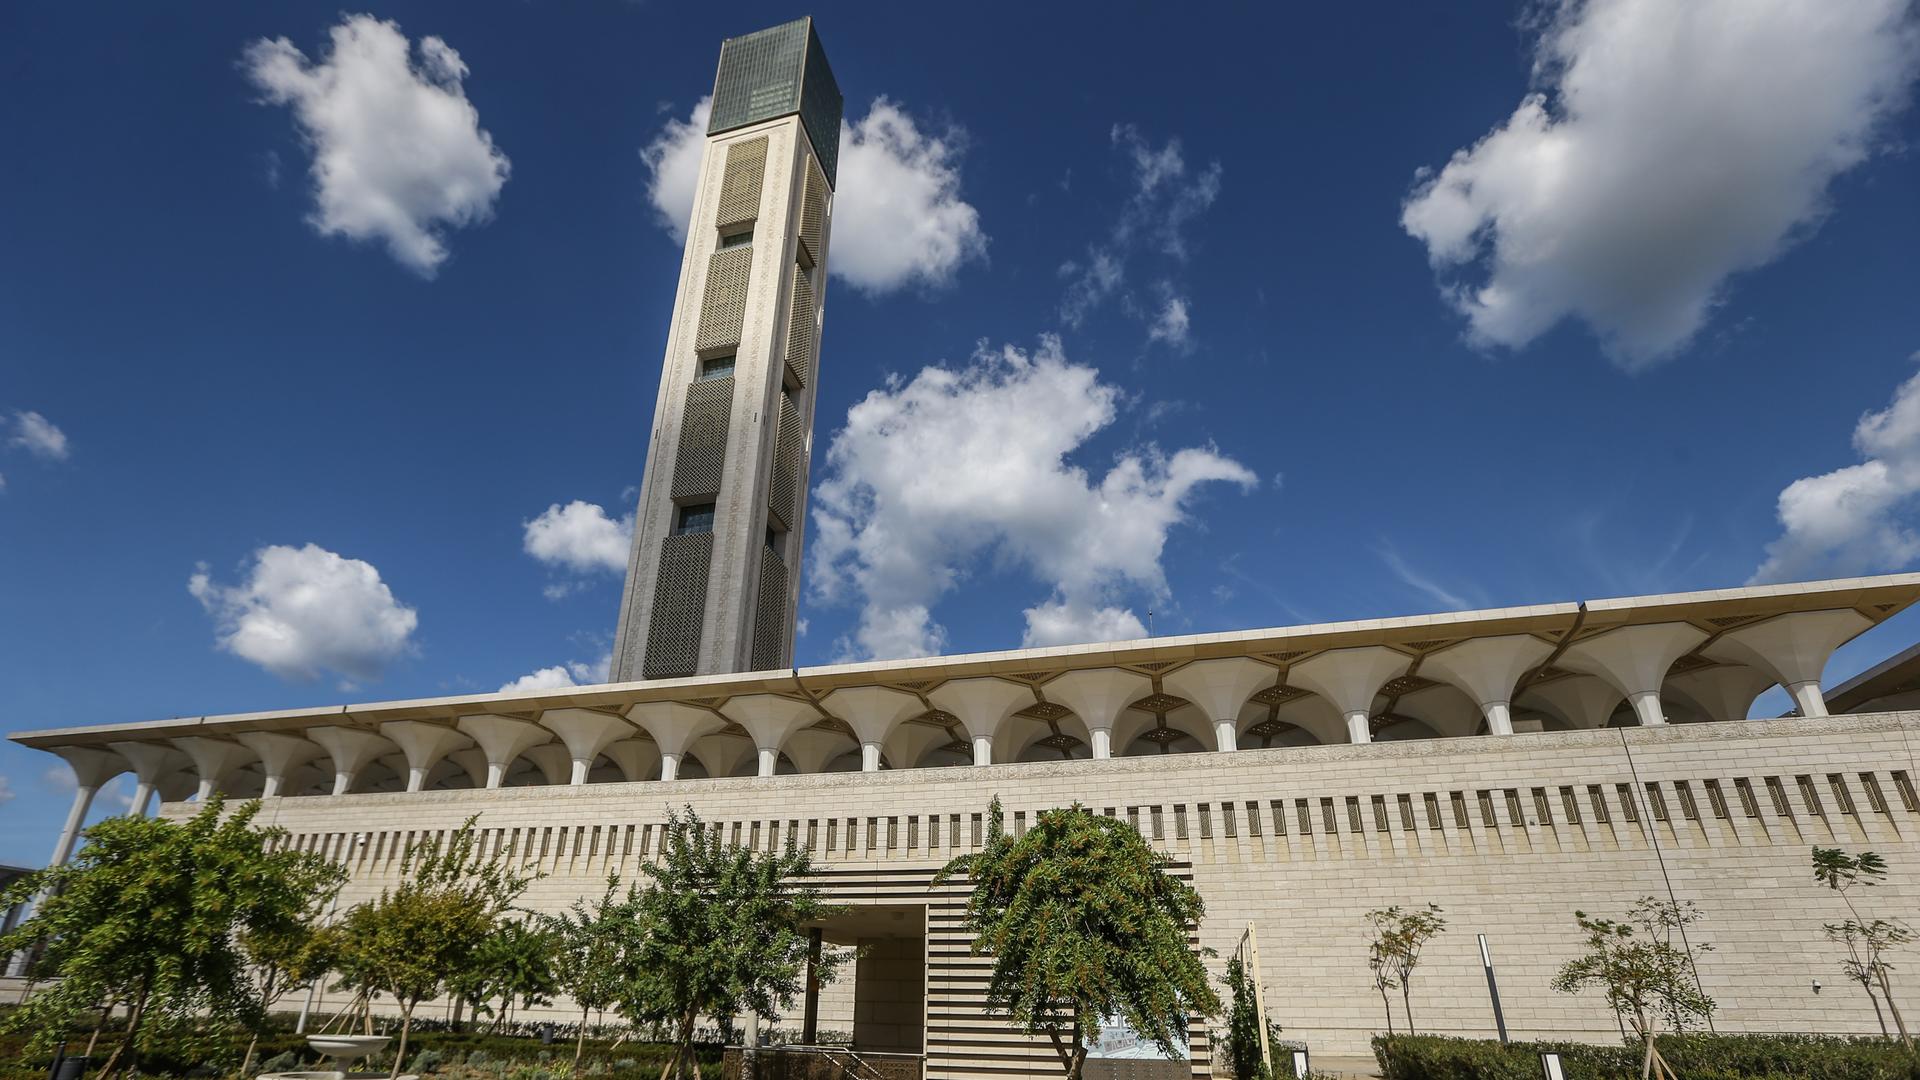 Algiers: Außenansicht der Großen Moschee von Algier mit dem 265 Meter hohen Minarett.